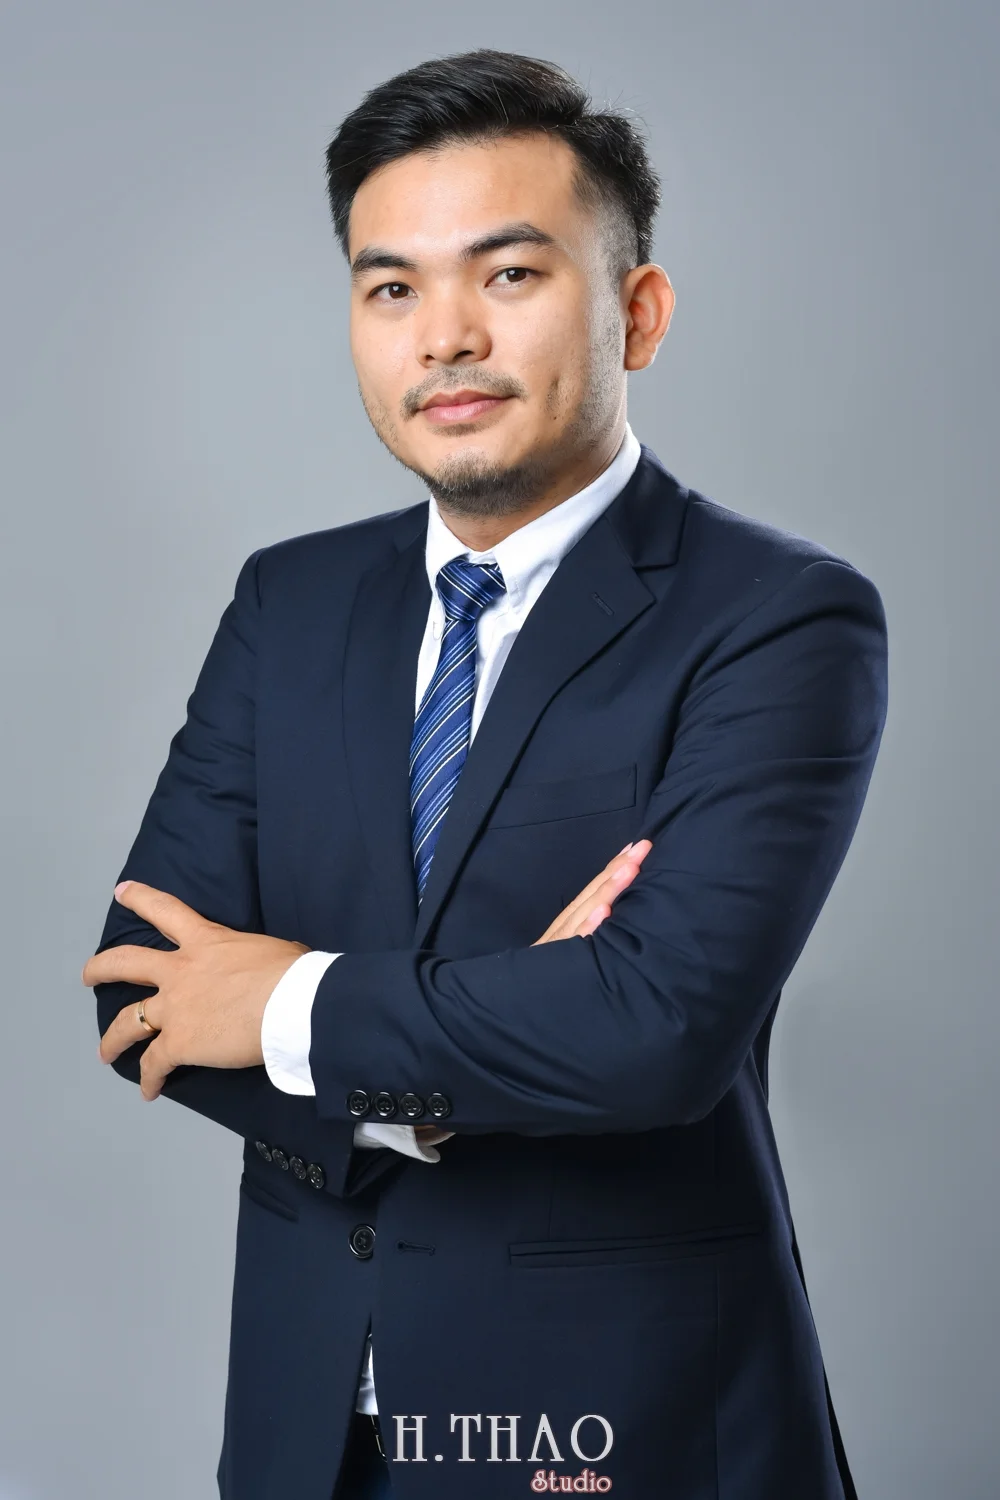 Anh profile cong ty 3 - Dịch vụ chụp ảnh CV đẹp, chuyên nghiệp tại Tp.HCM - HThao Studio